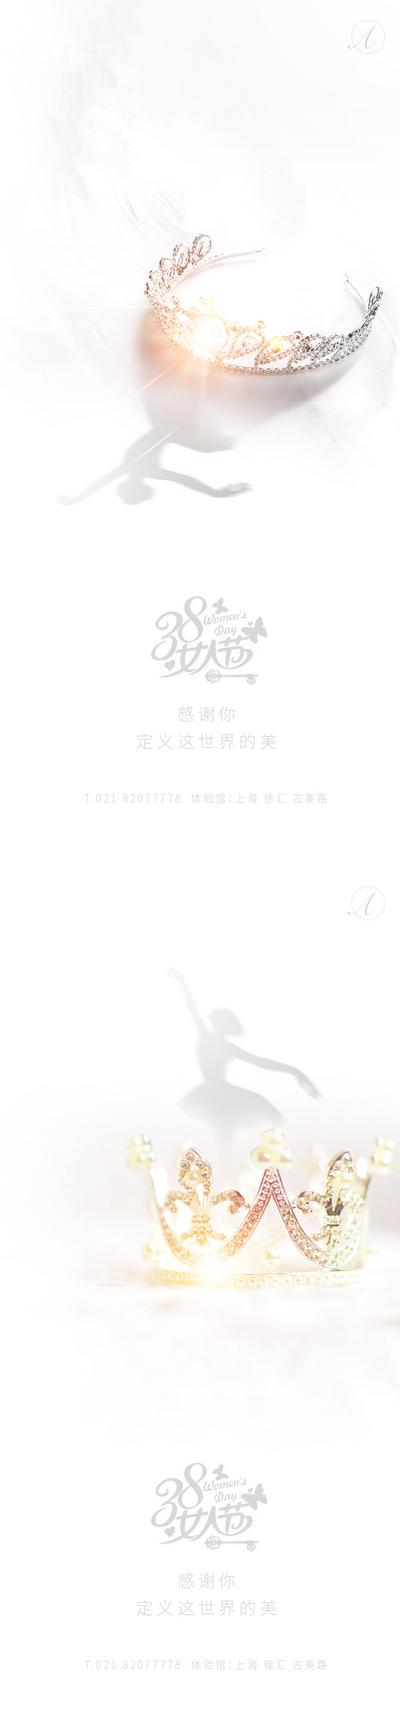 南门网 海报 公历节日 女神节 38 妇女节 皇冠 舞者 系列 简约